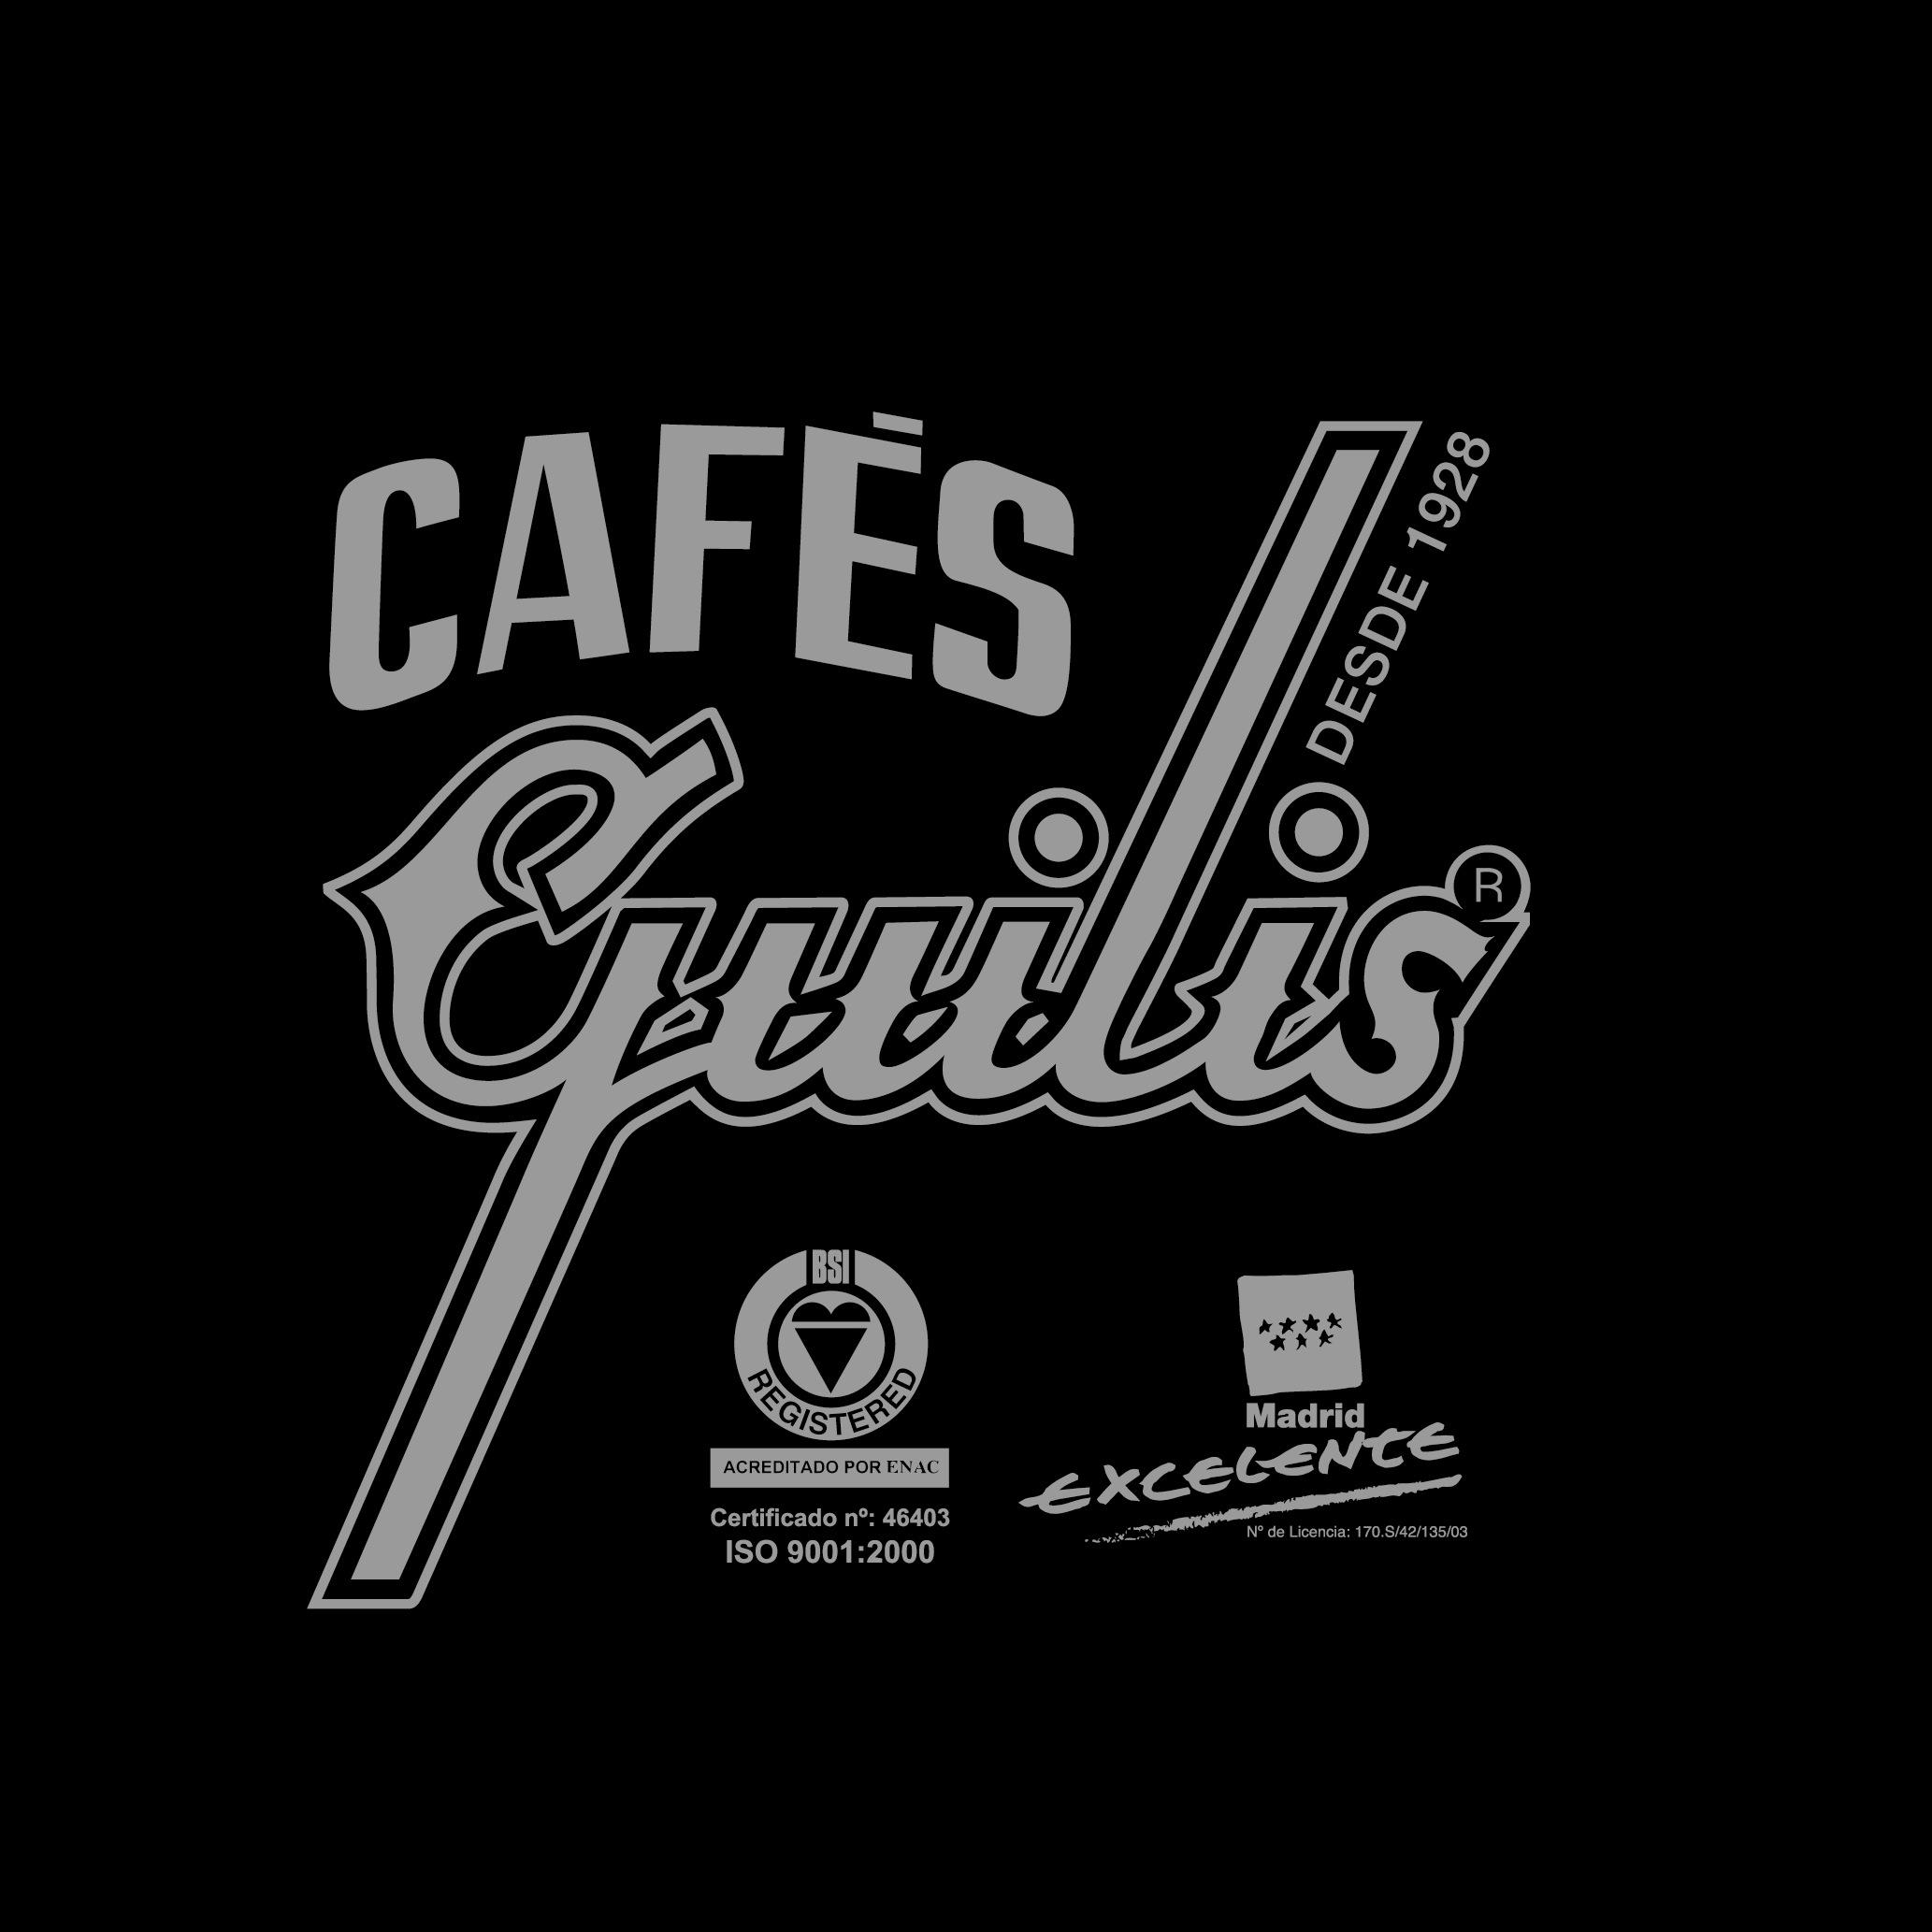 Hace 90 años que fabricamos el mejor café. Lo importamos de las mejores regiones cafeteras del mundo. Nuestro objetivo: ofrecer un Blend de Lujo. #CafésGuilis